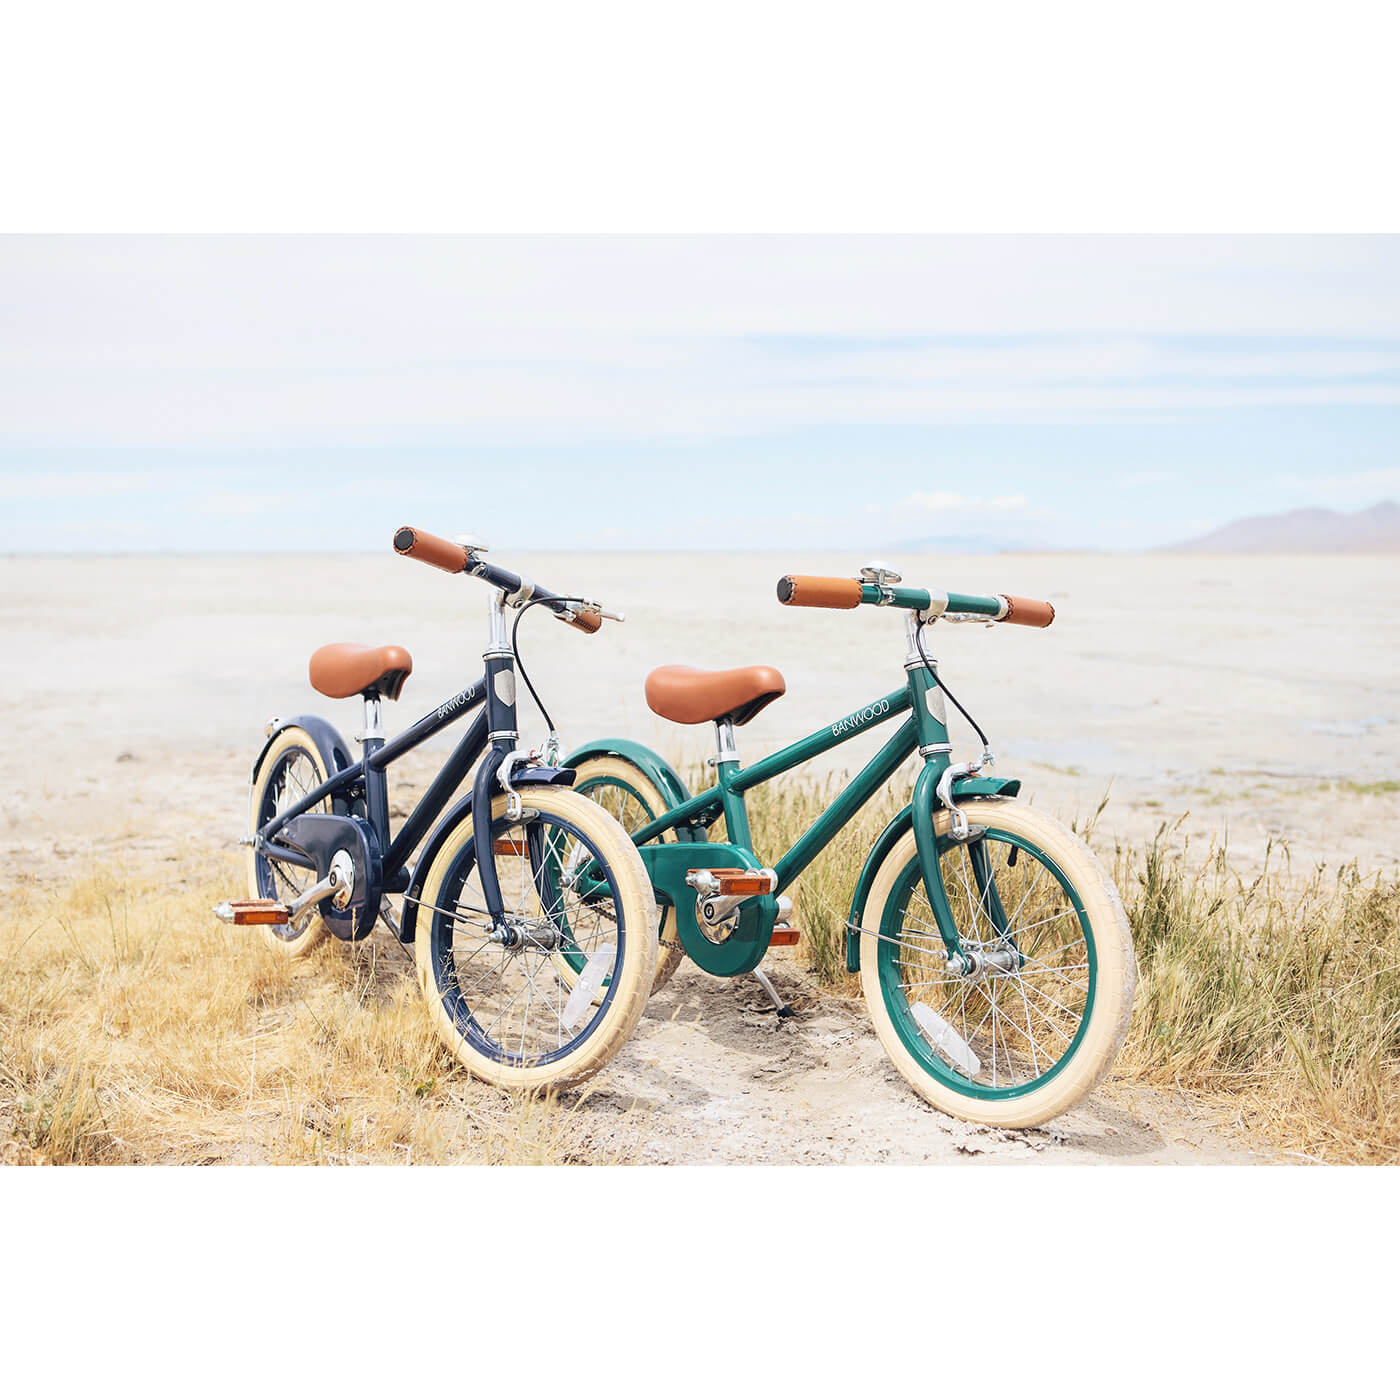 Banwood Classic Vintage Bisiklet | Lacivert